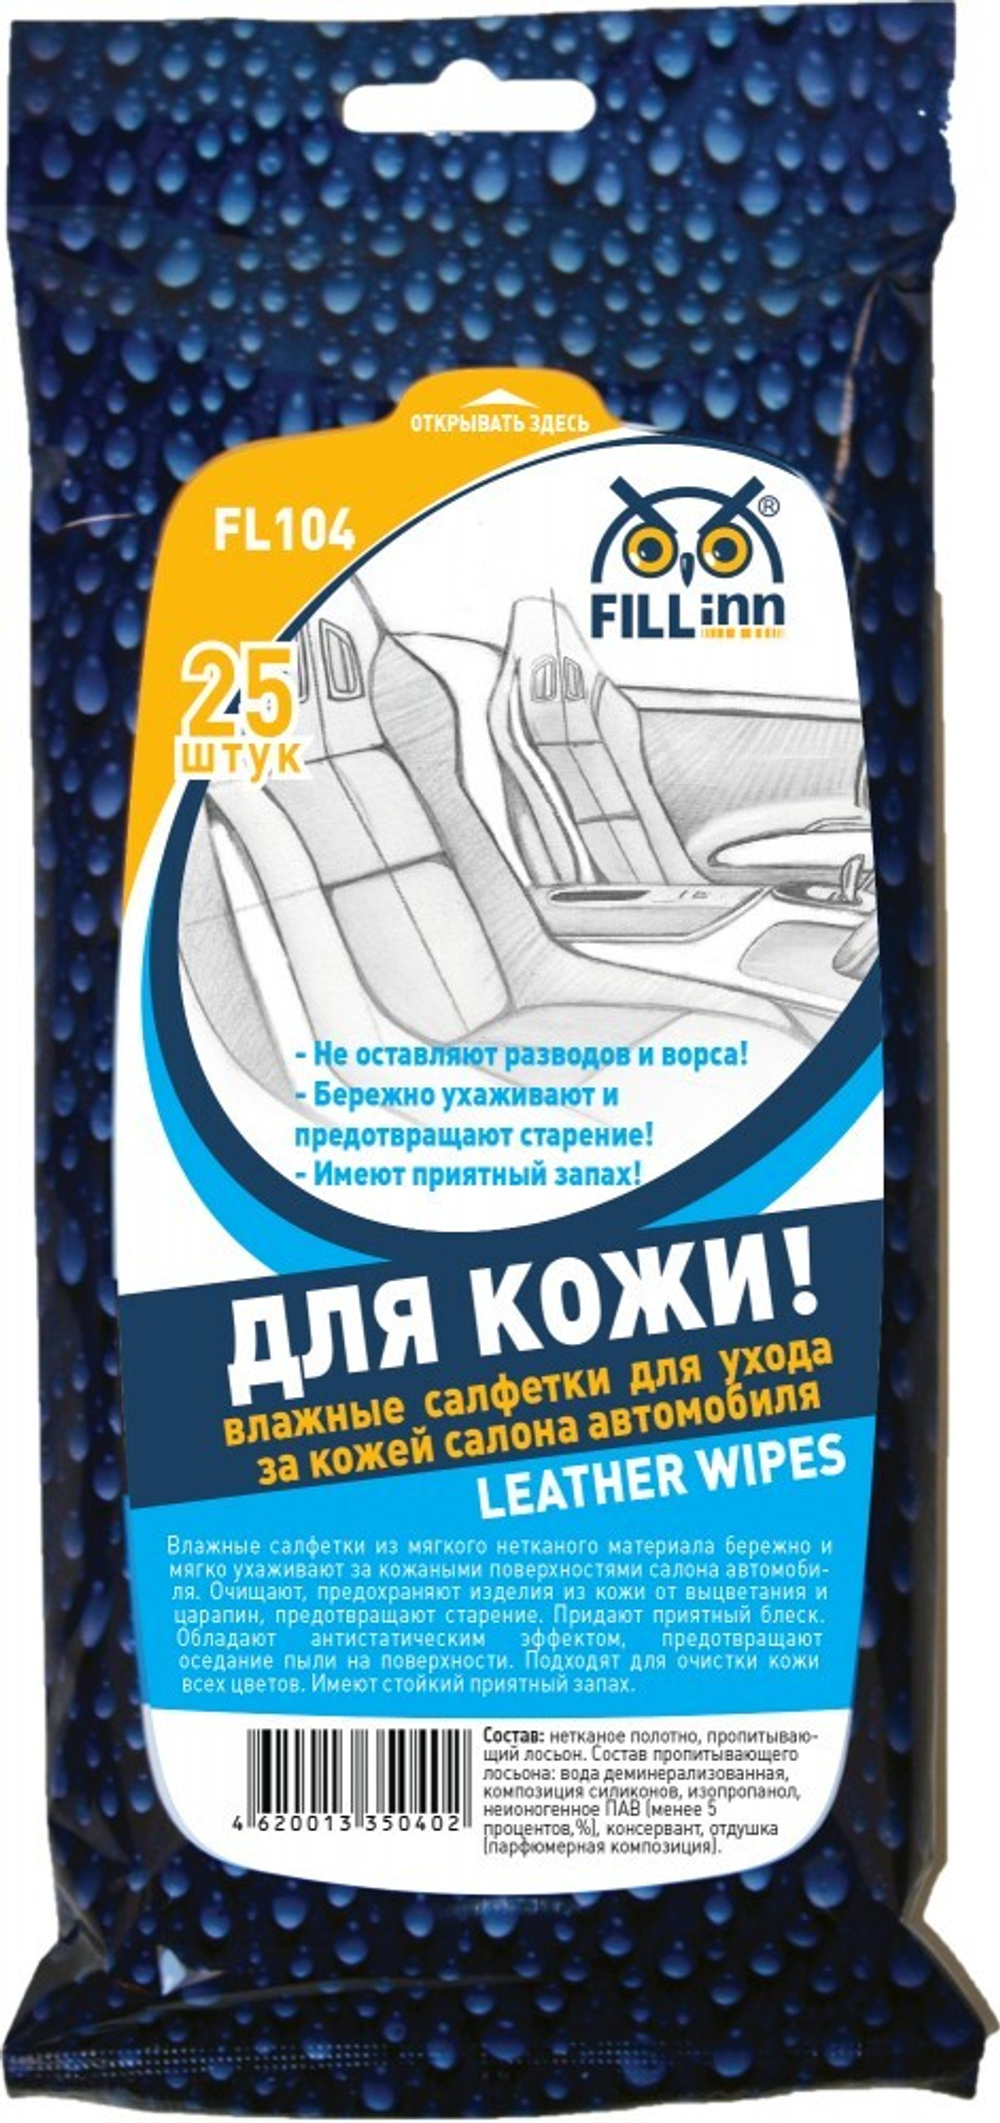 FL104 Влажные салфетки для ухода за кожей салона автомобиля в сашетах, 25 штук